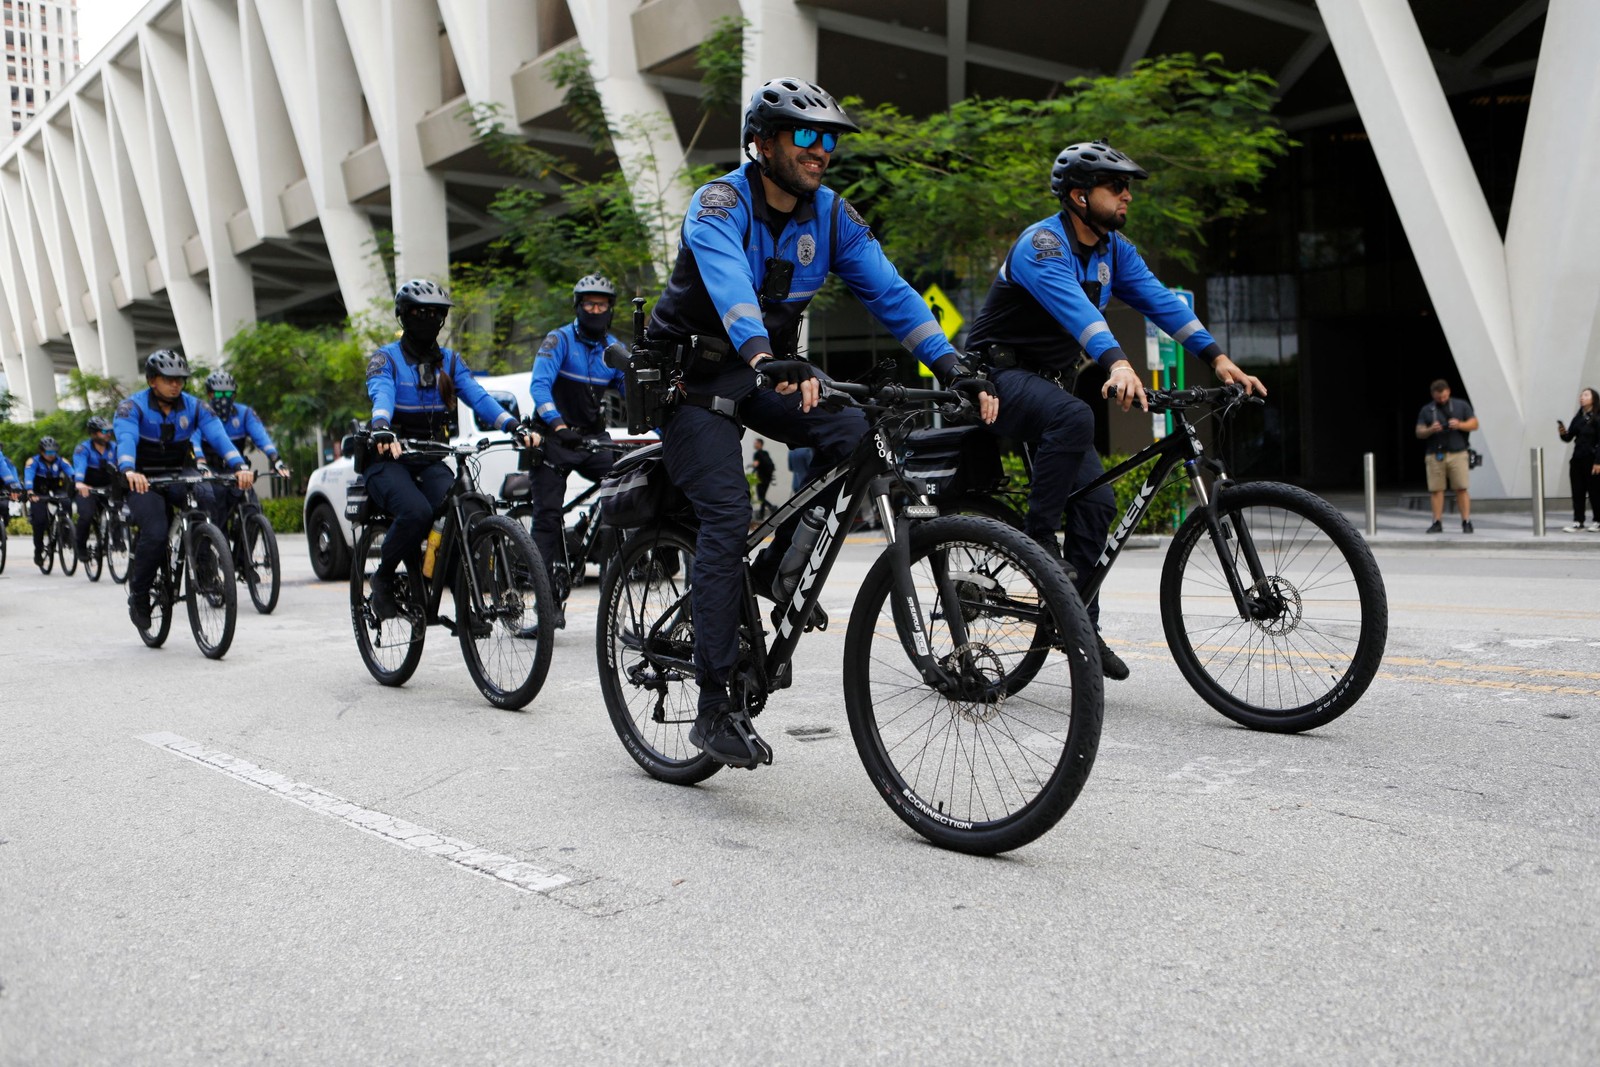 Membros do Departamento de Polícia de Miami fazem patrulha de bicicleta perto do Tribunal Federal dos Estados Unidos — Foto: Octavio Jones / Getty Images via AFP